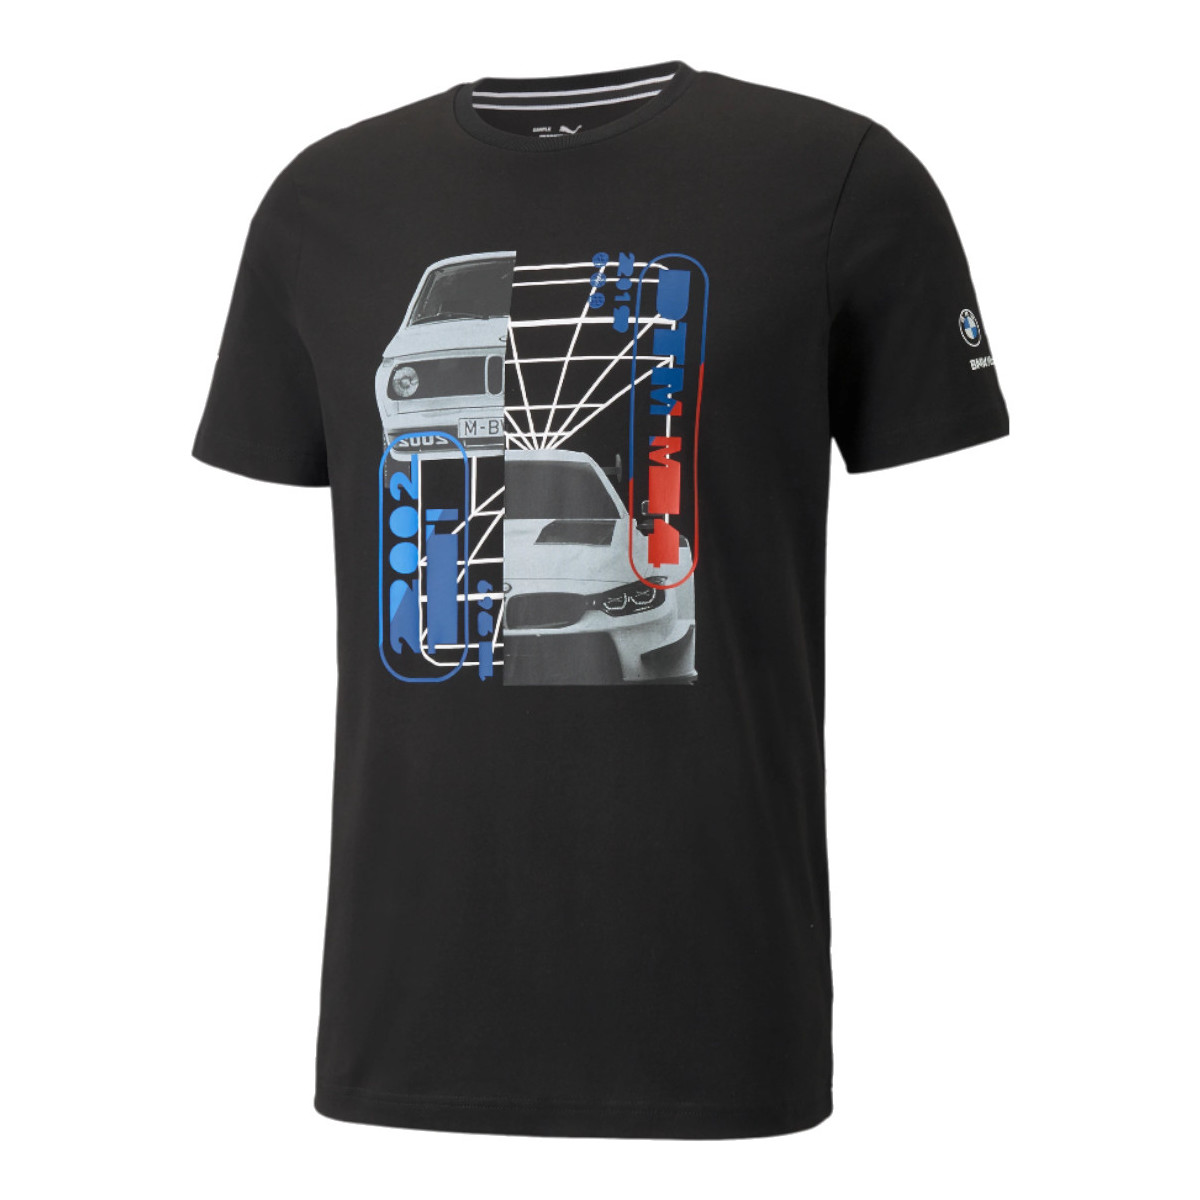 Oblečenie Muž Tričká s krátkym rukávom Puma BMW Motorsport Graphic Tee Čierna